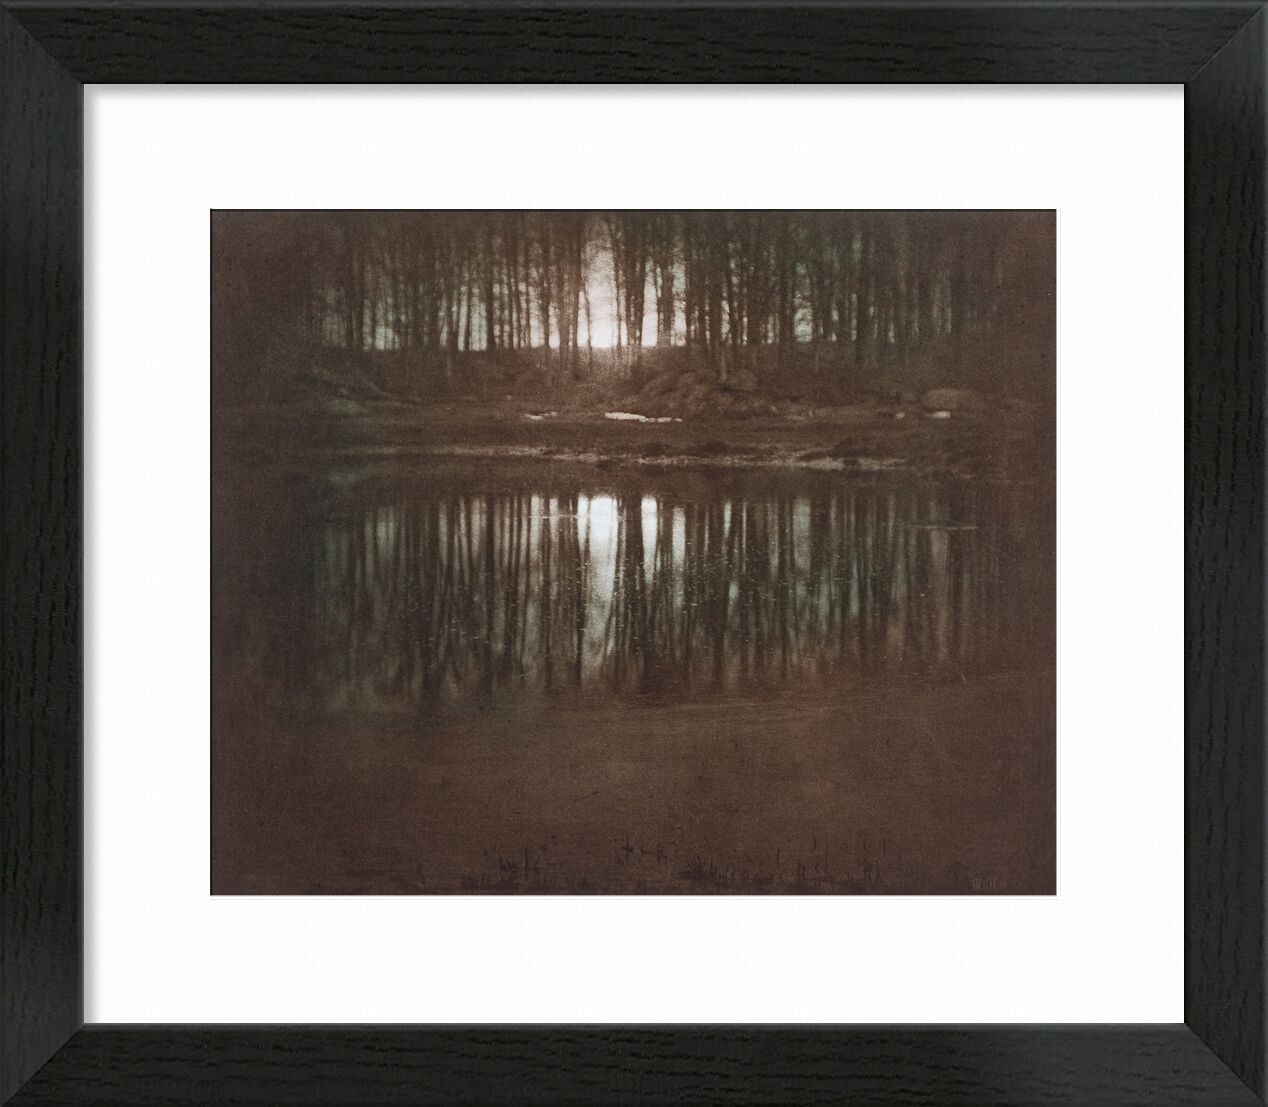 The Pond—Moonlight -Edward Steichen 1904 von Bildende Kunst, Prodi Art, gegen tag, Schwarz und weiß, edward steichen, Sonnenuntergang, Sonne, Licht, Teich